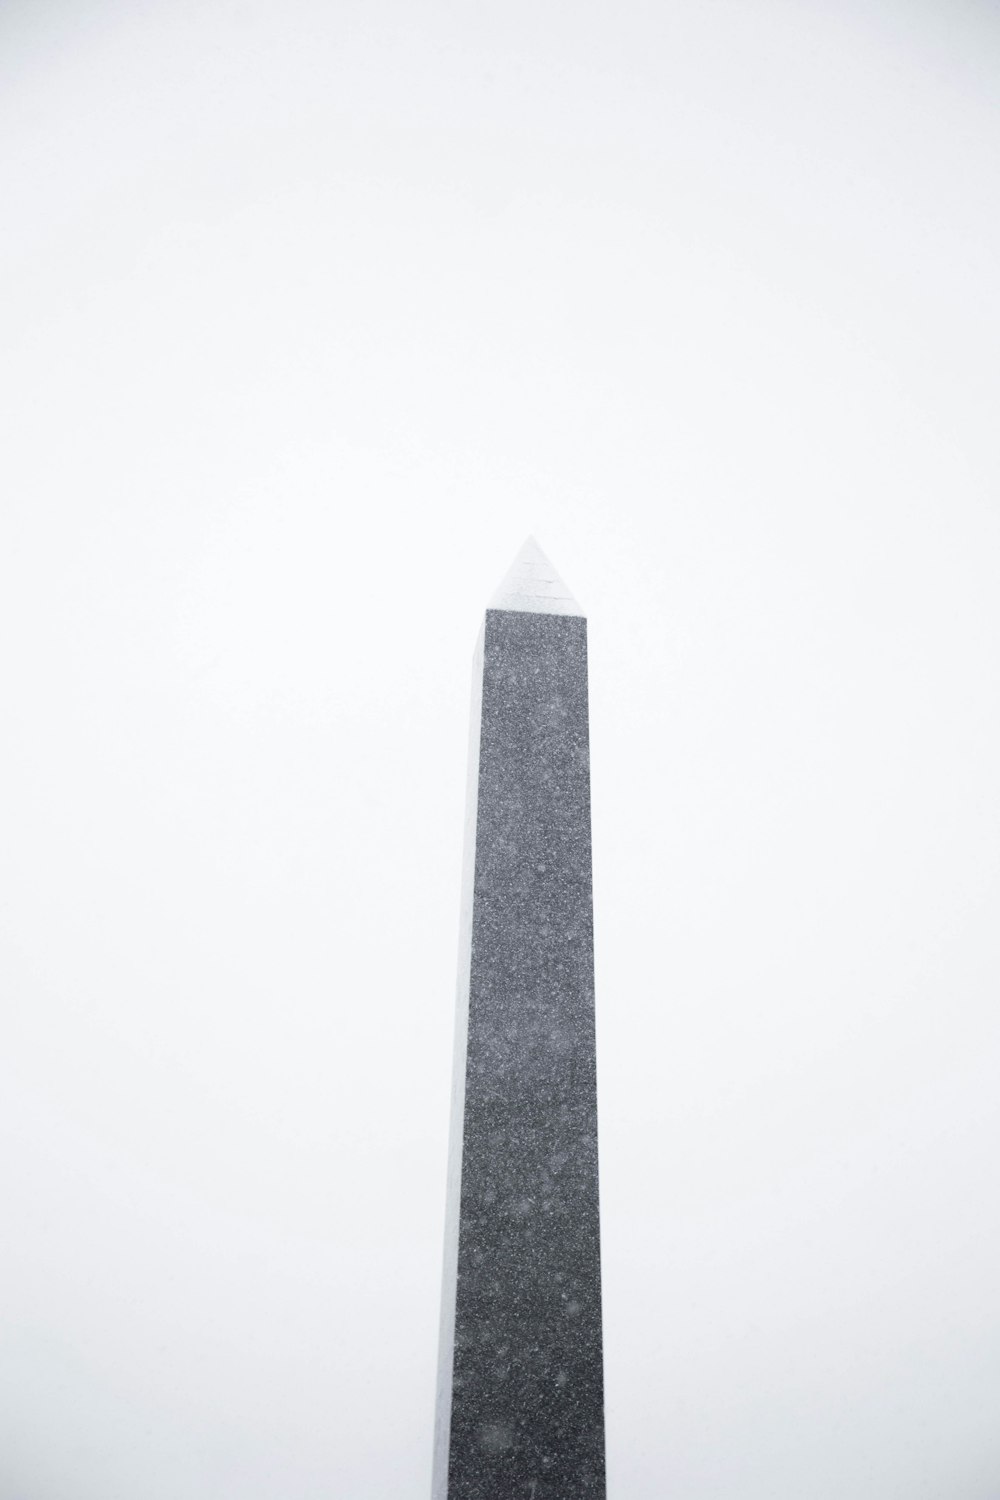 torre de hormigón gris bajo el cielo blanco